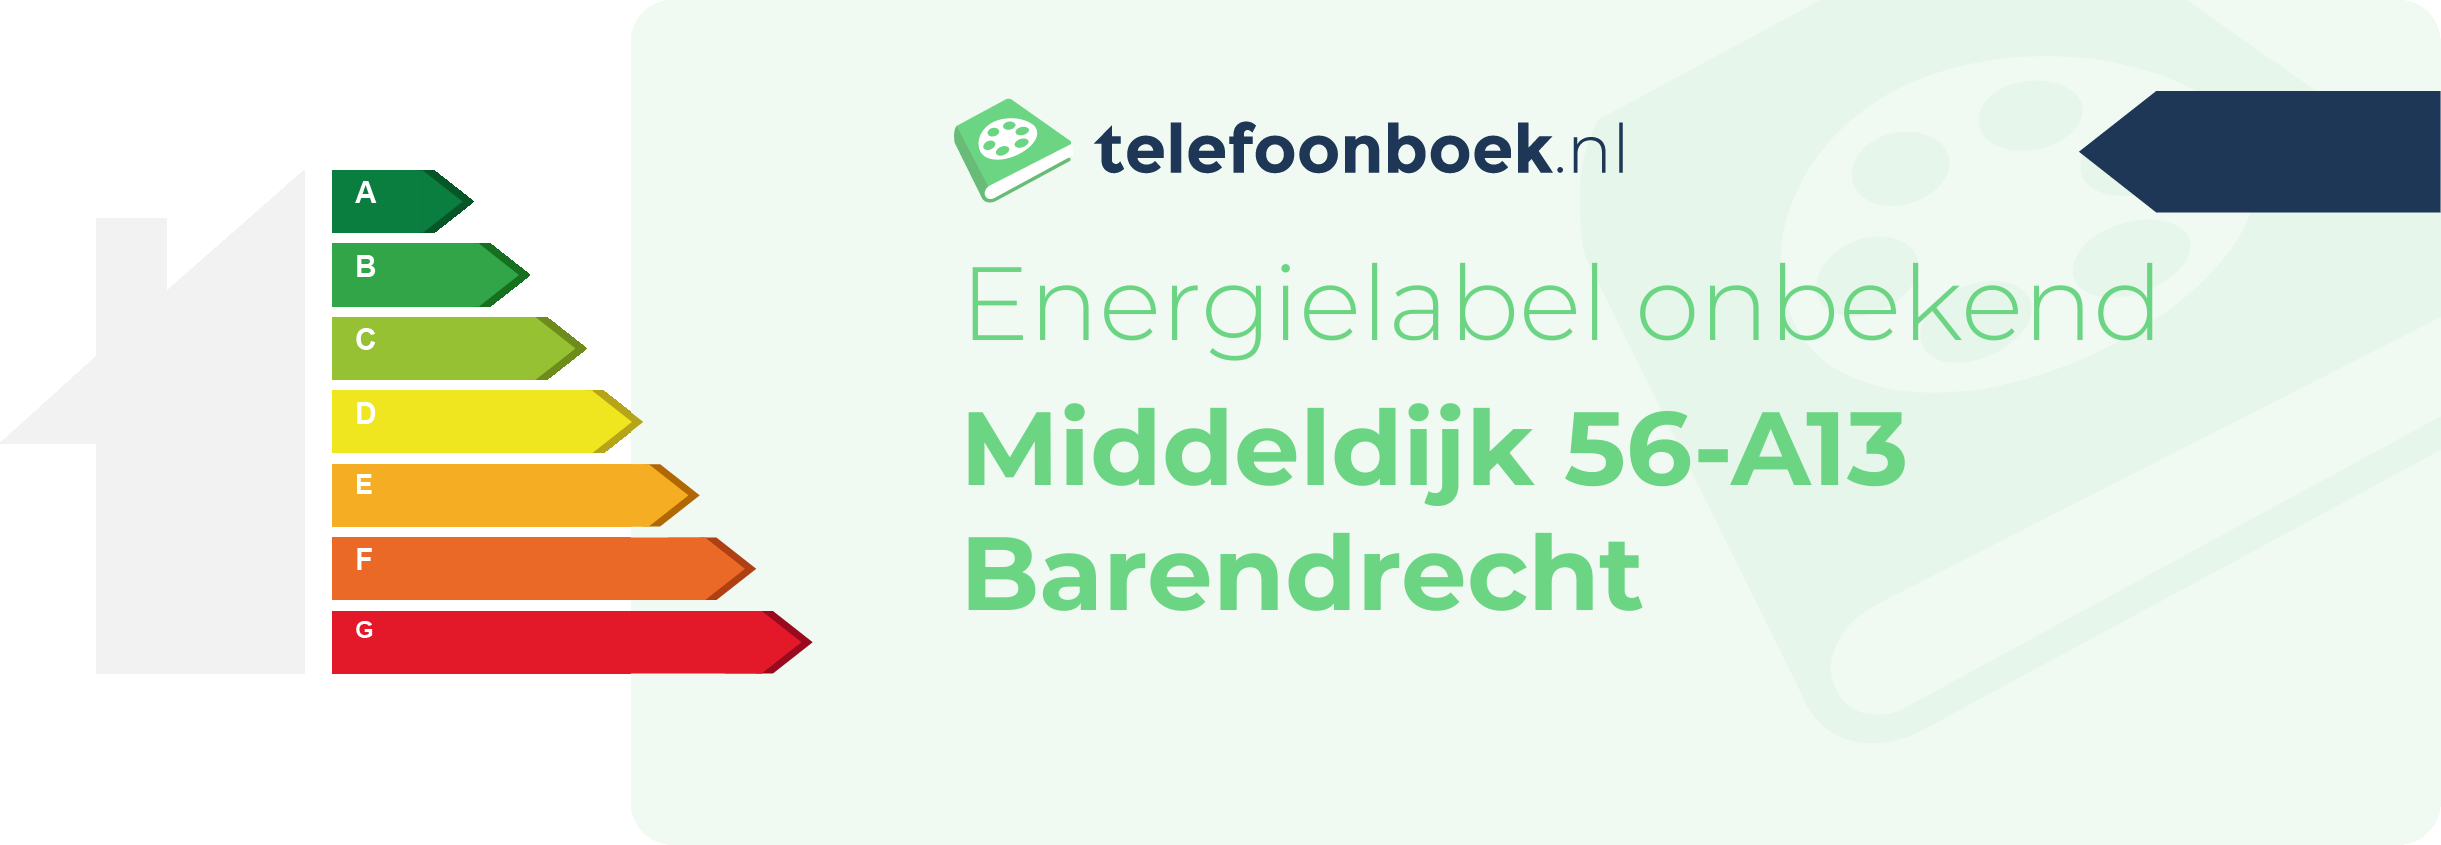 Energielabel Middeldijk 56-A13 Barendrecht